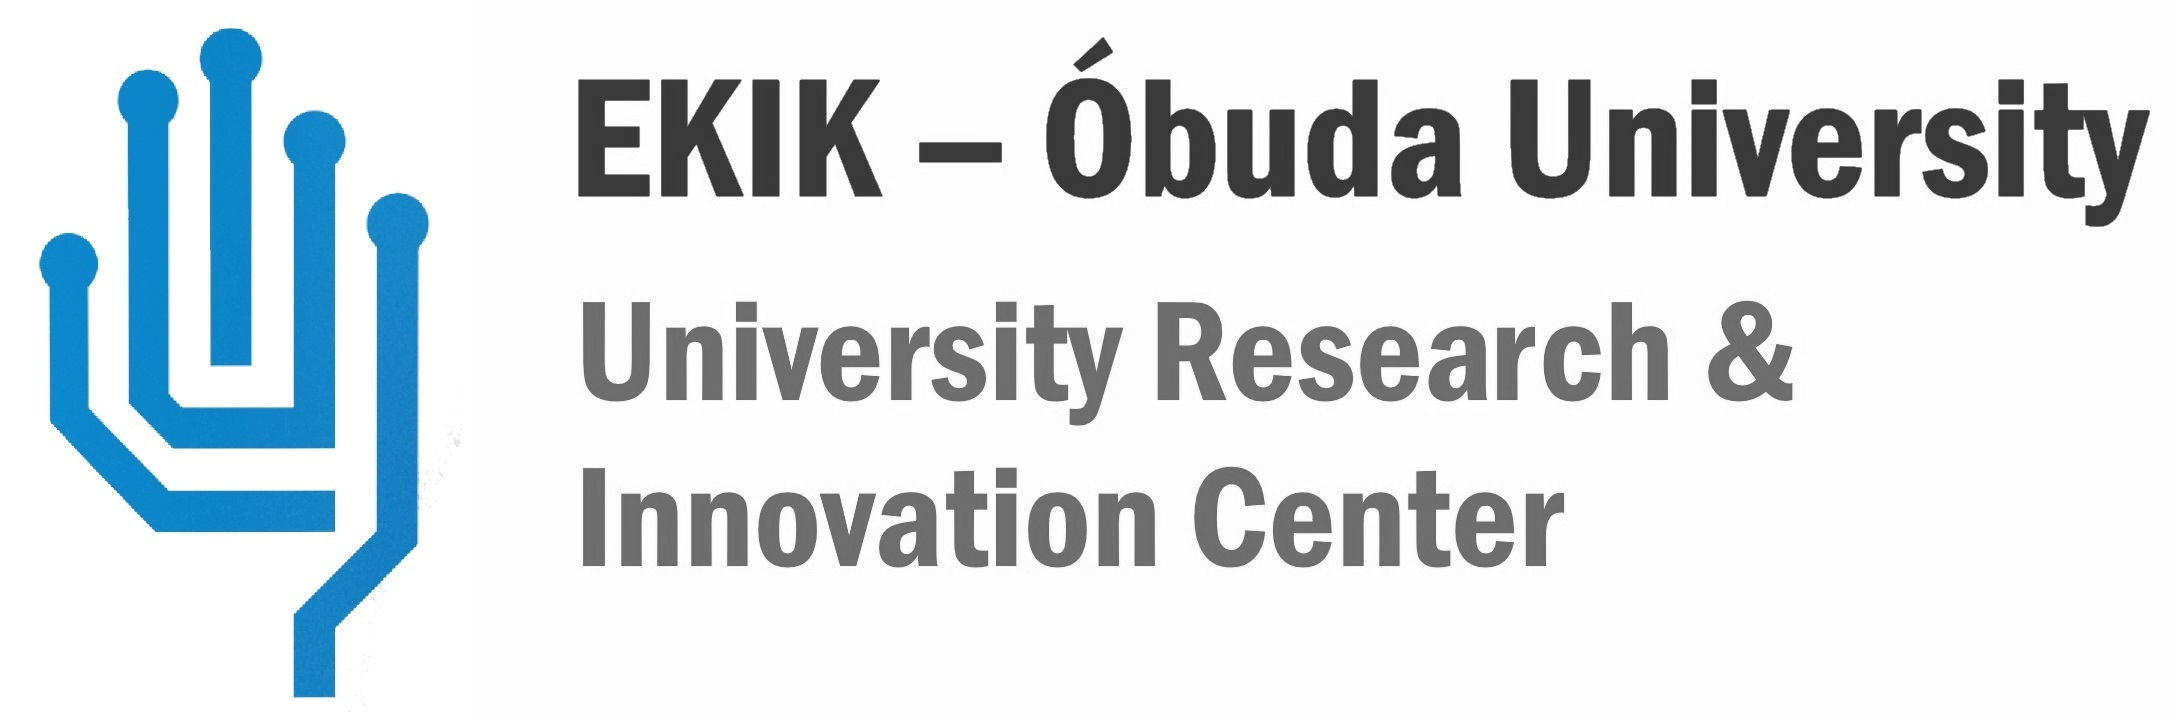 EKIK - Obuda University